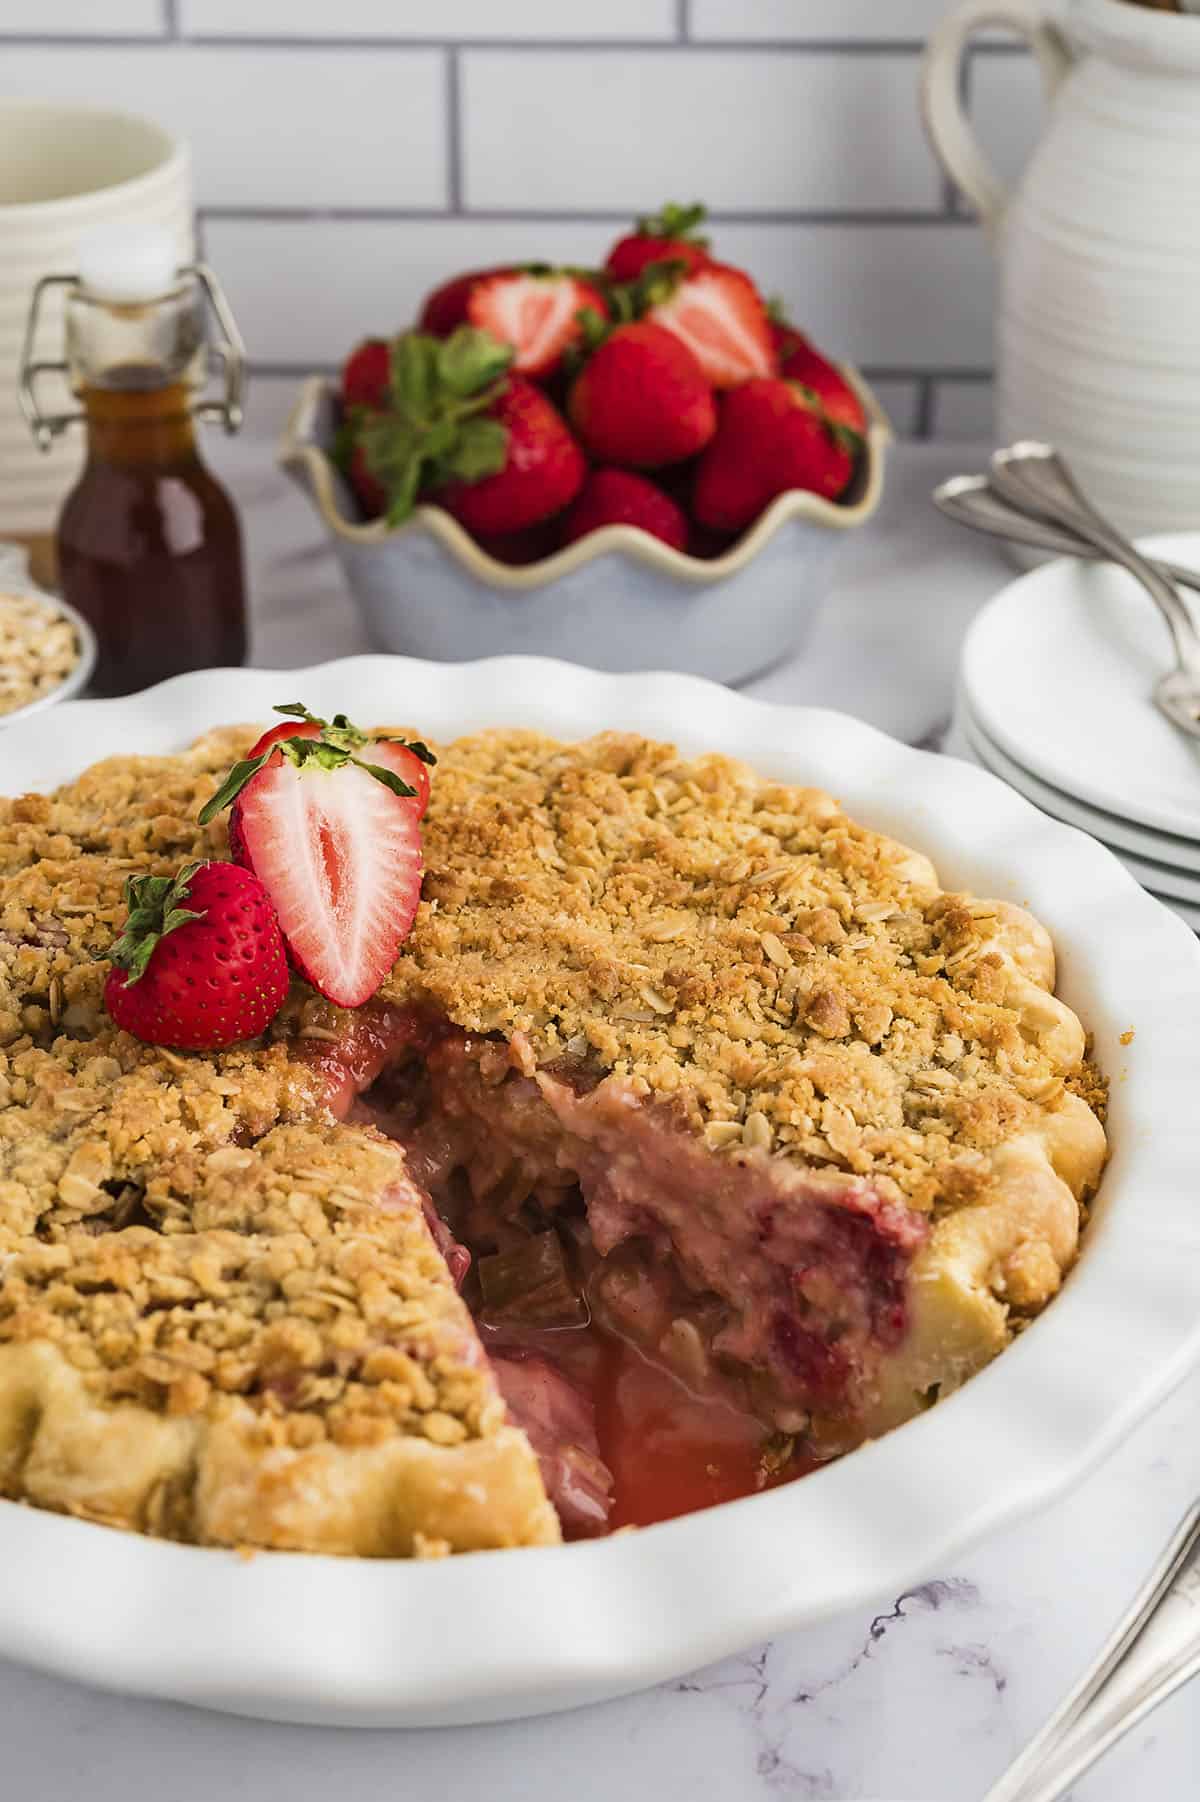 Strawberry rhubarb pie in pie plate.